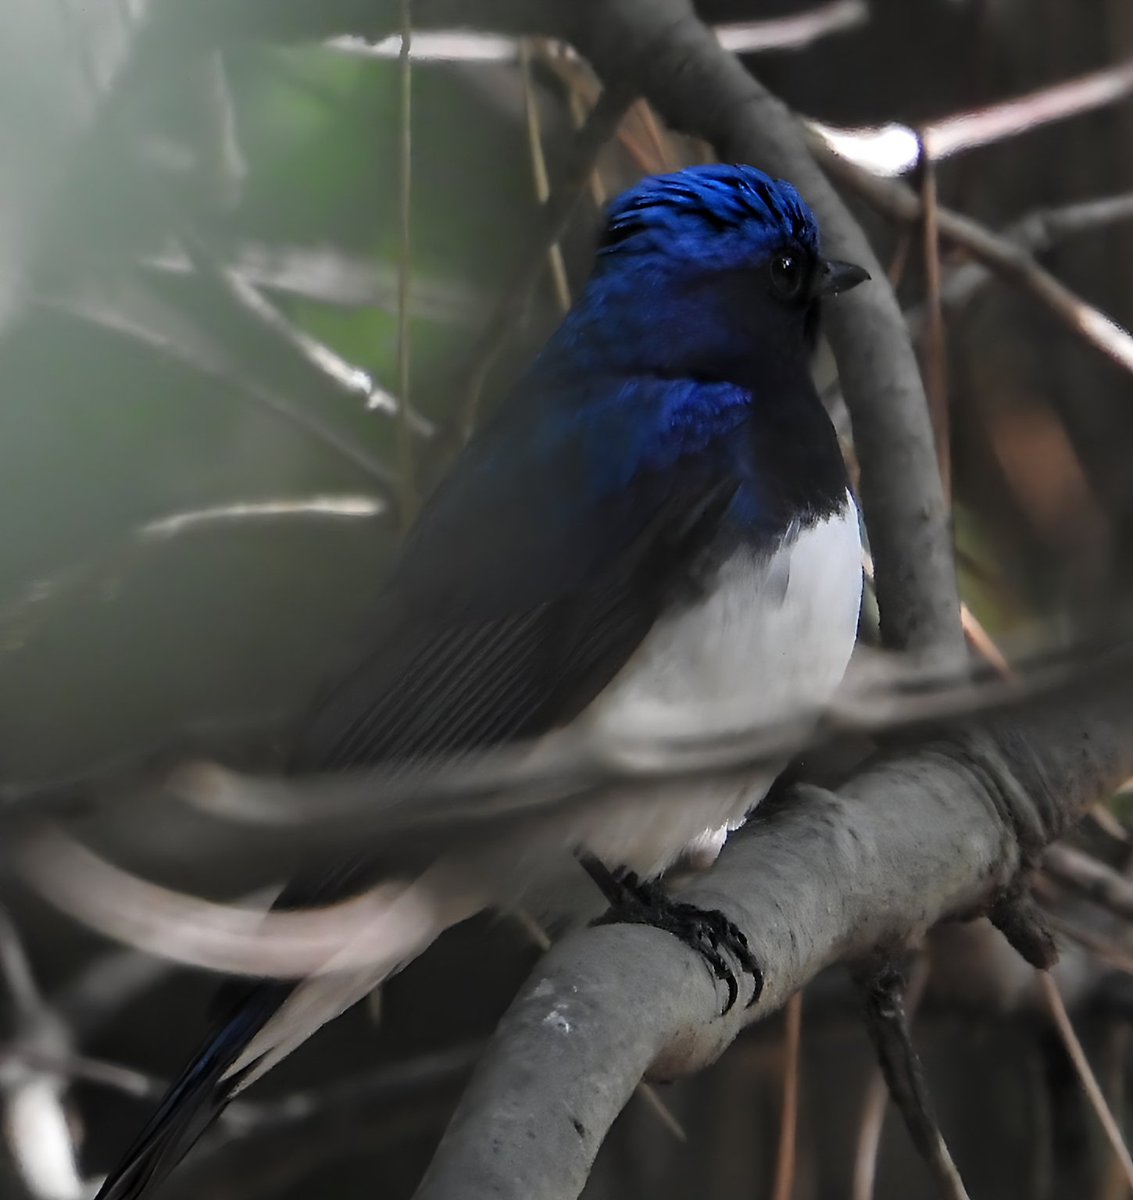 春の訪れと共に幸せの青い鳥さんがやって来ました🐦
#オオルリ